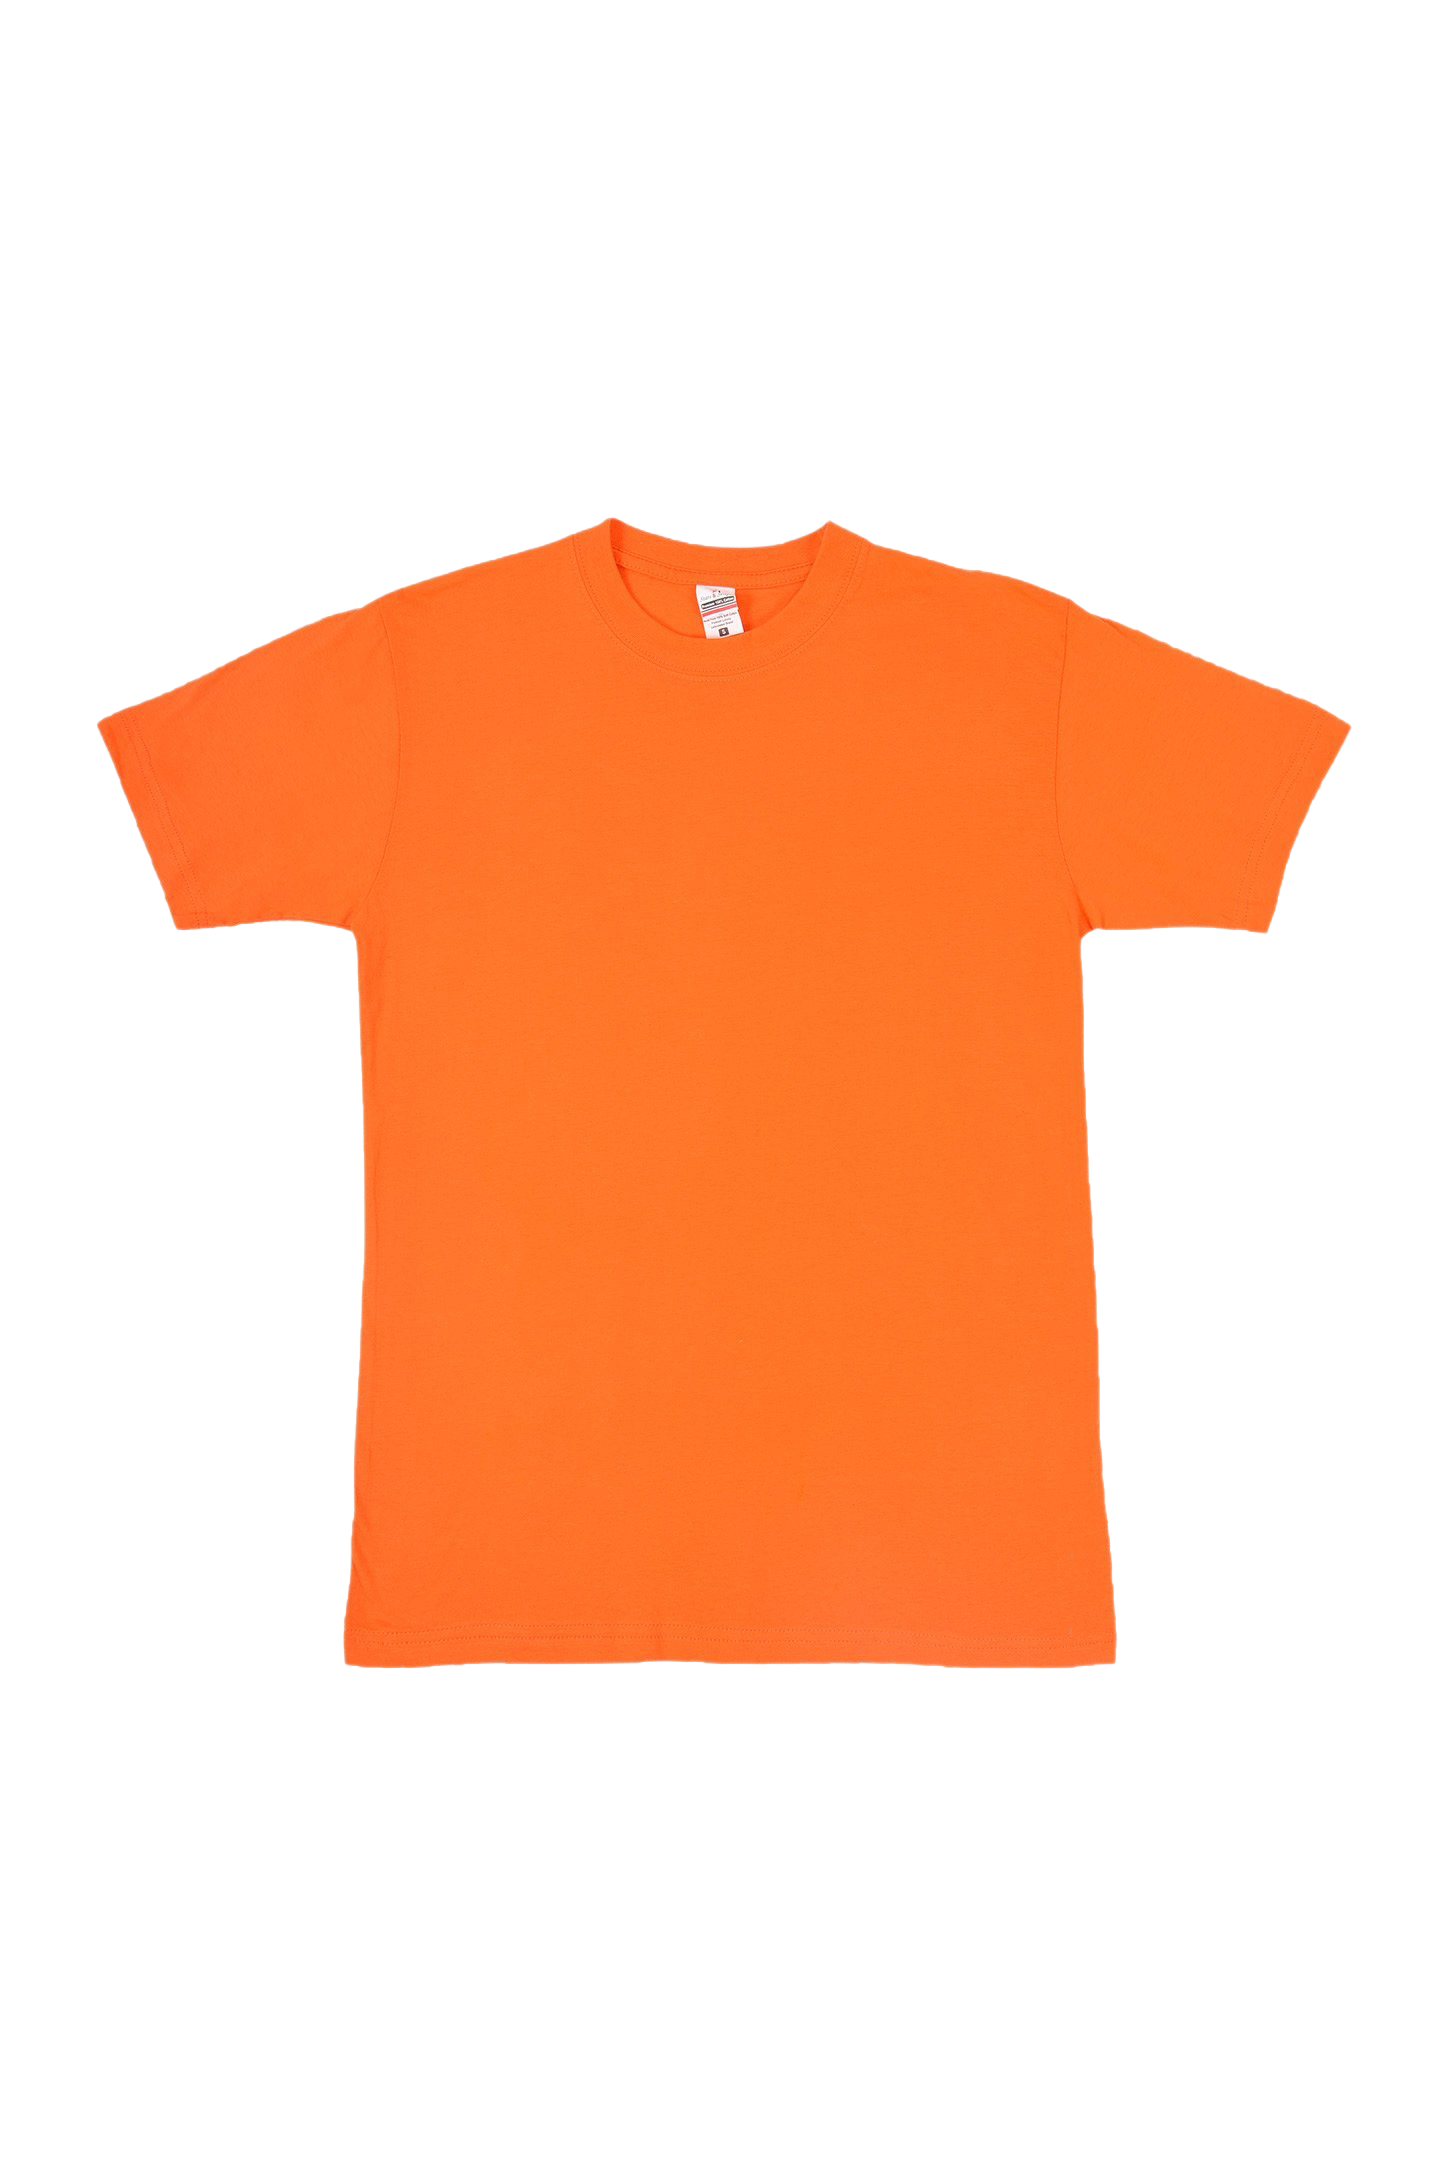 Einfaches orangefarbenes T-Shirt PNG-Bild